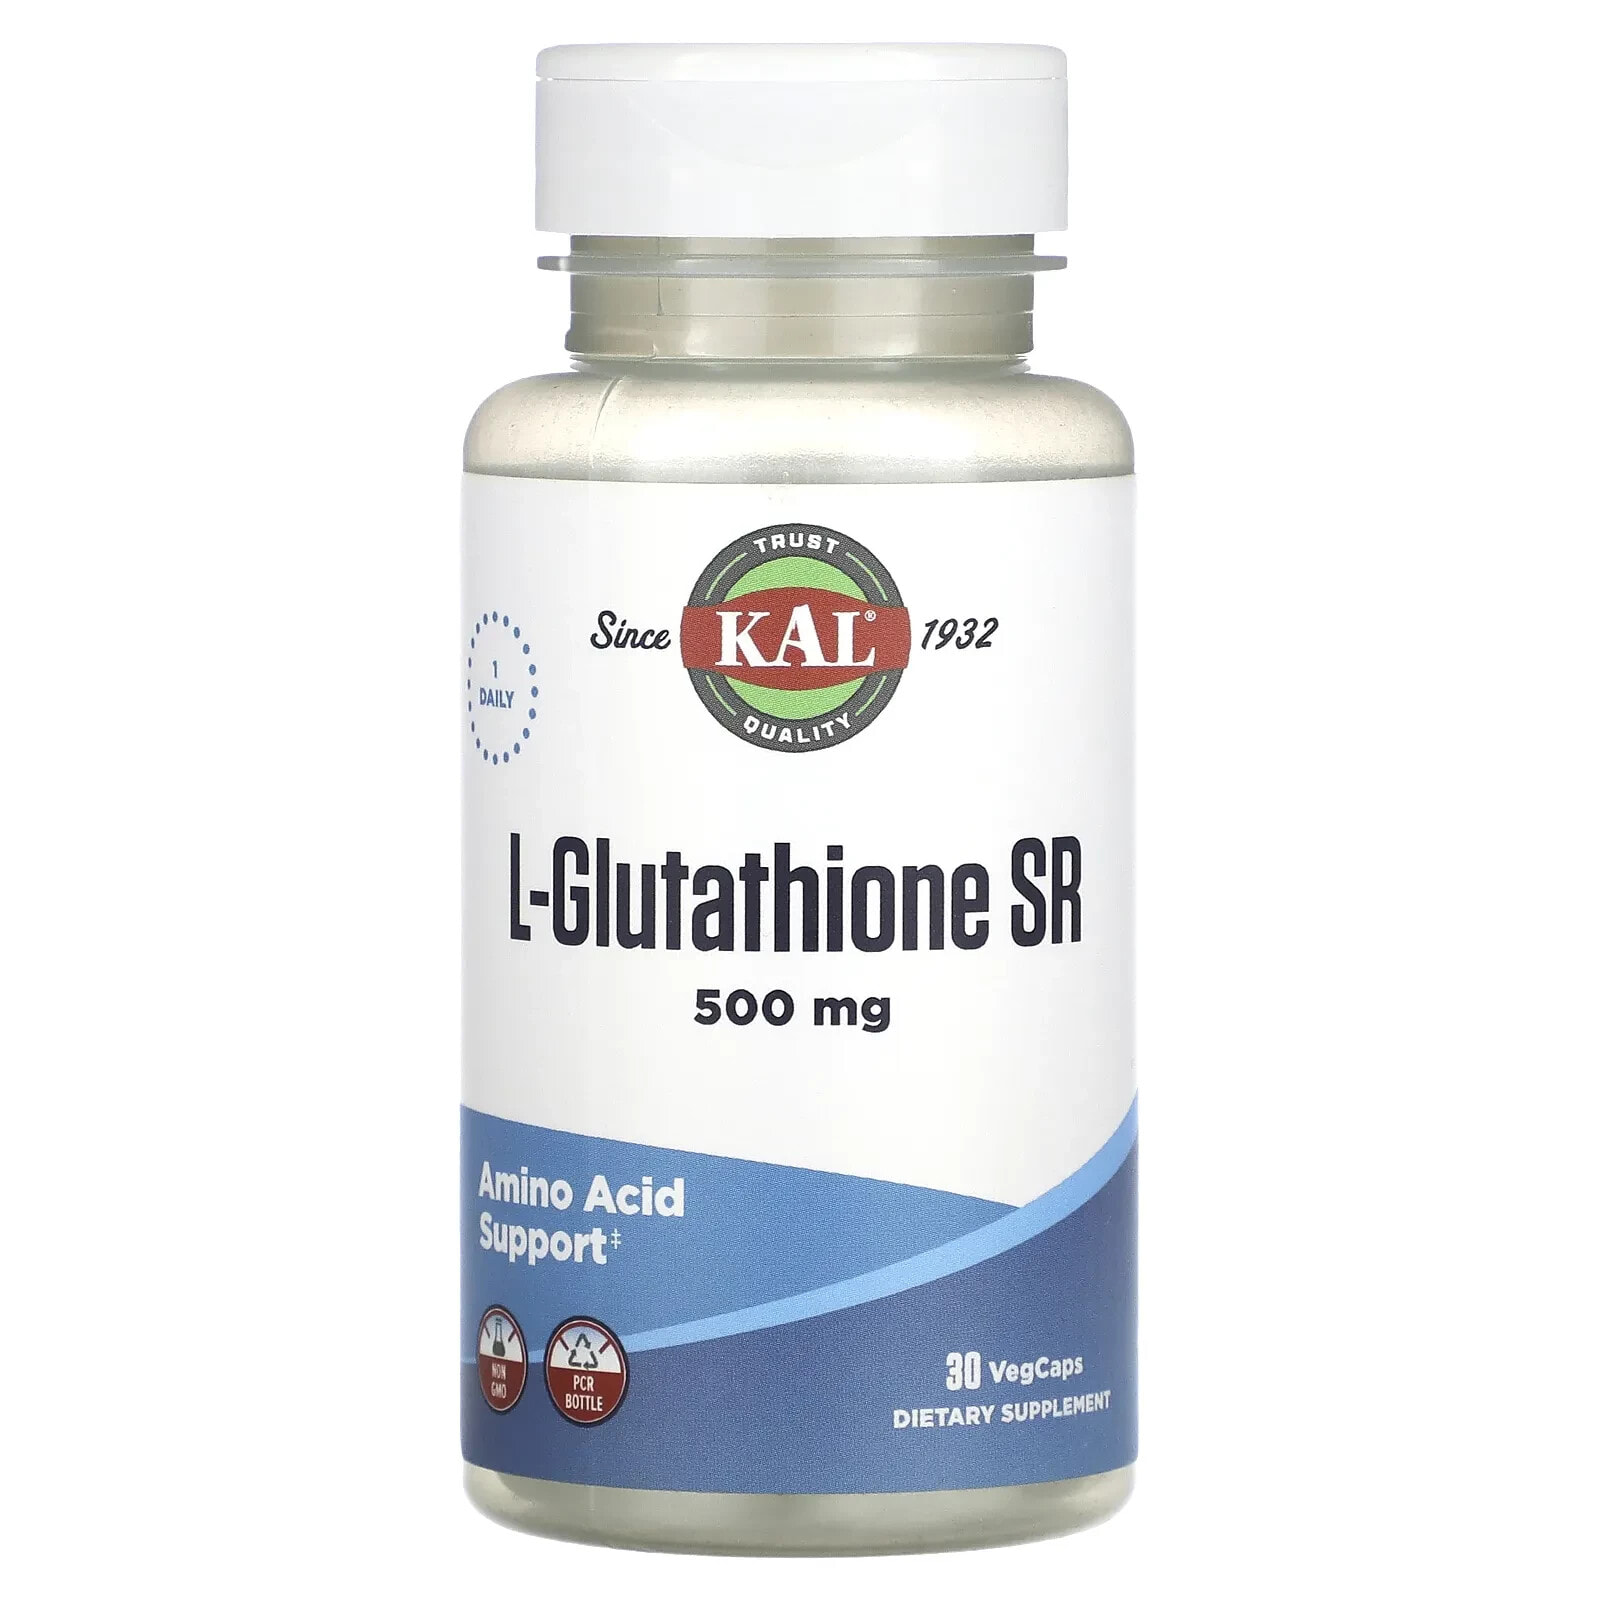 L-Glutathione SR, 500 mg, 30 VegCaps